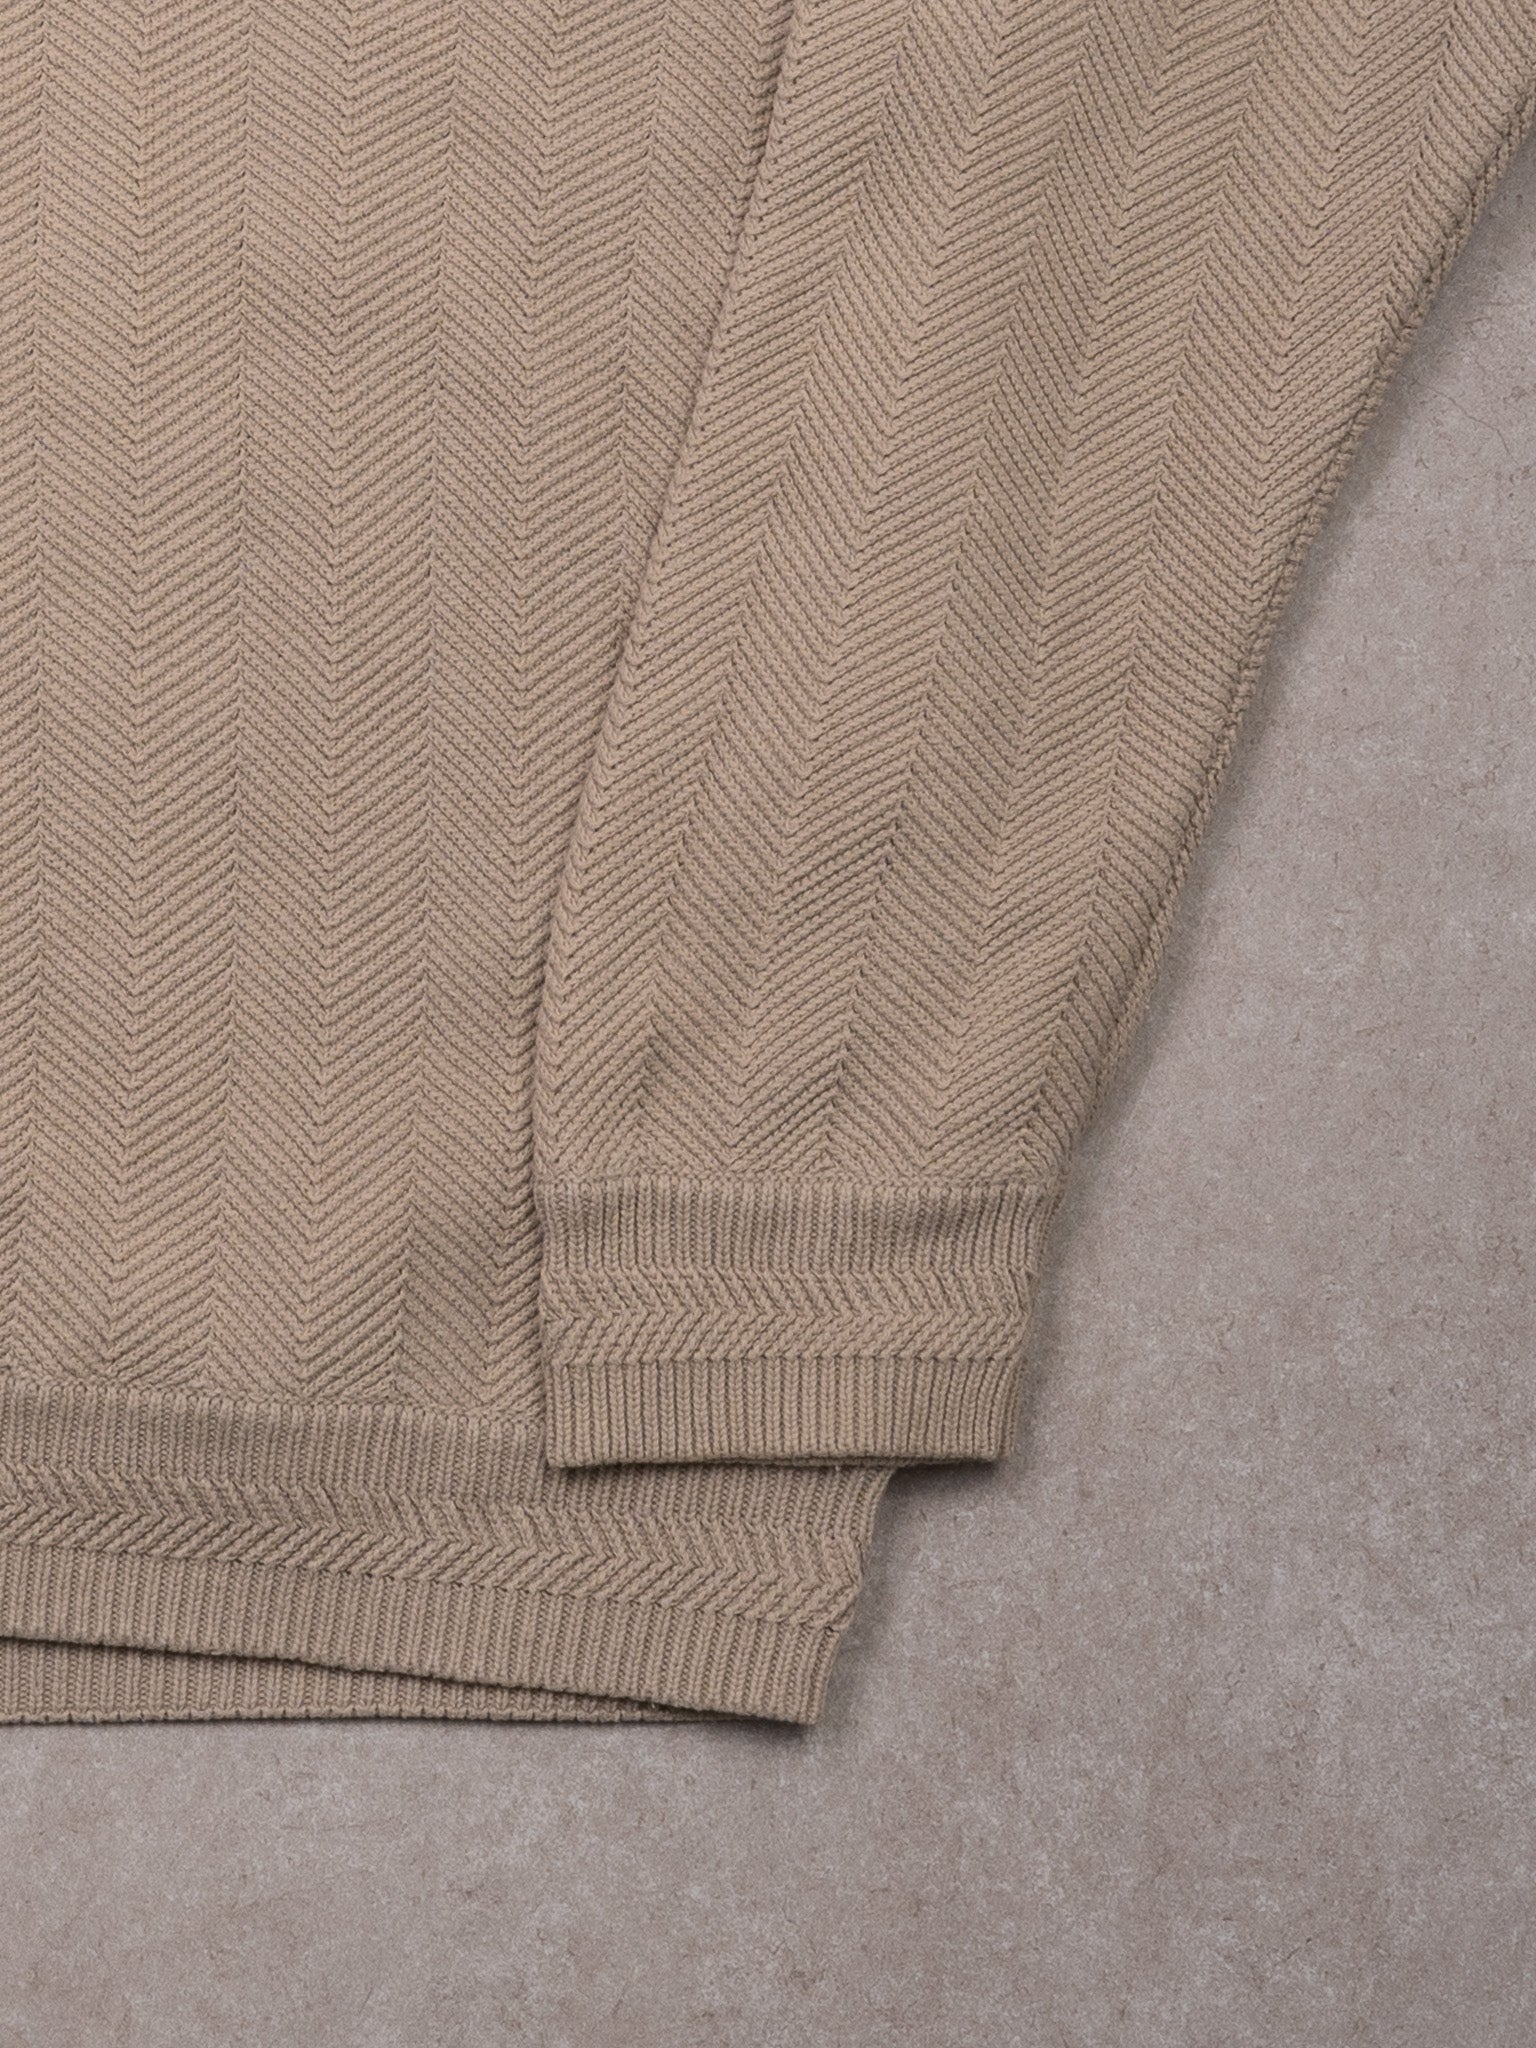 Vintage Beige Chaps RL Crest Knit Sweater (L)